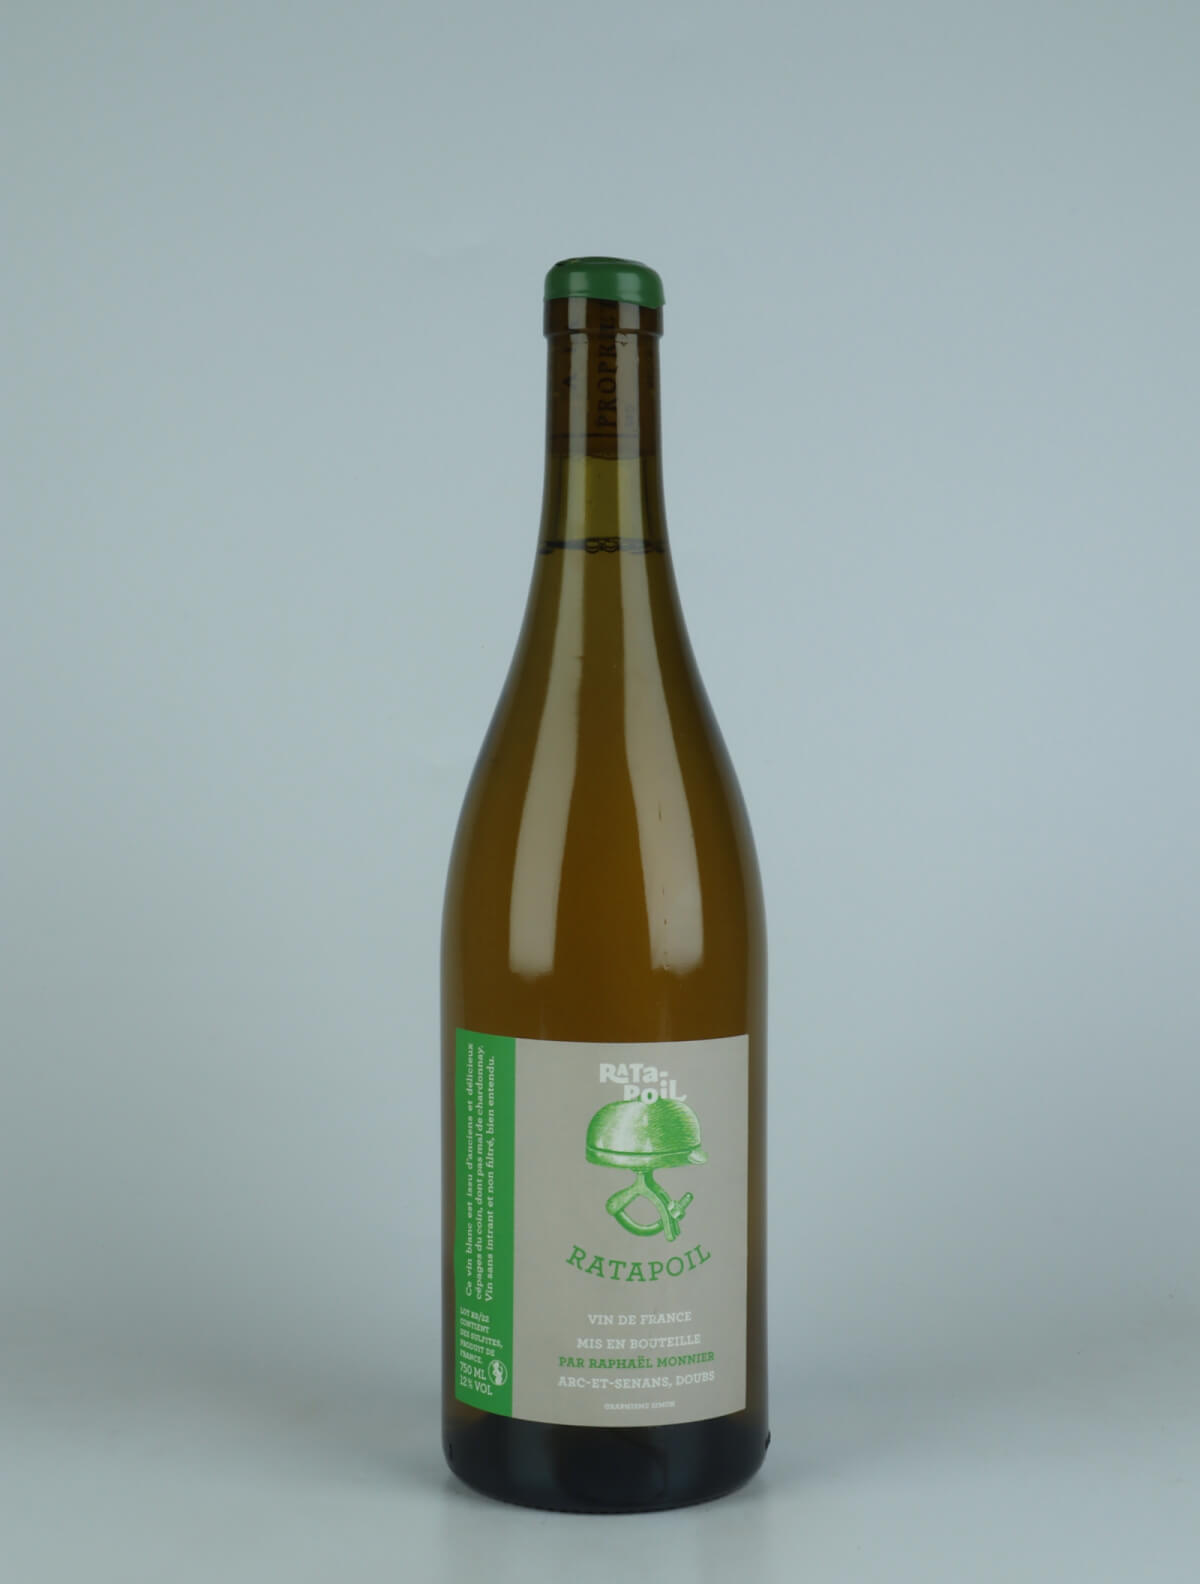 En flaske 2022 Ratapoil Blanc (Green label) Hvidvin fra Domaine Ratapoil, Jura i Frankrig